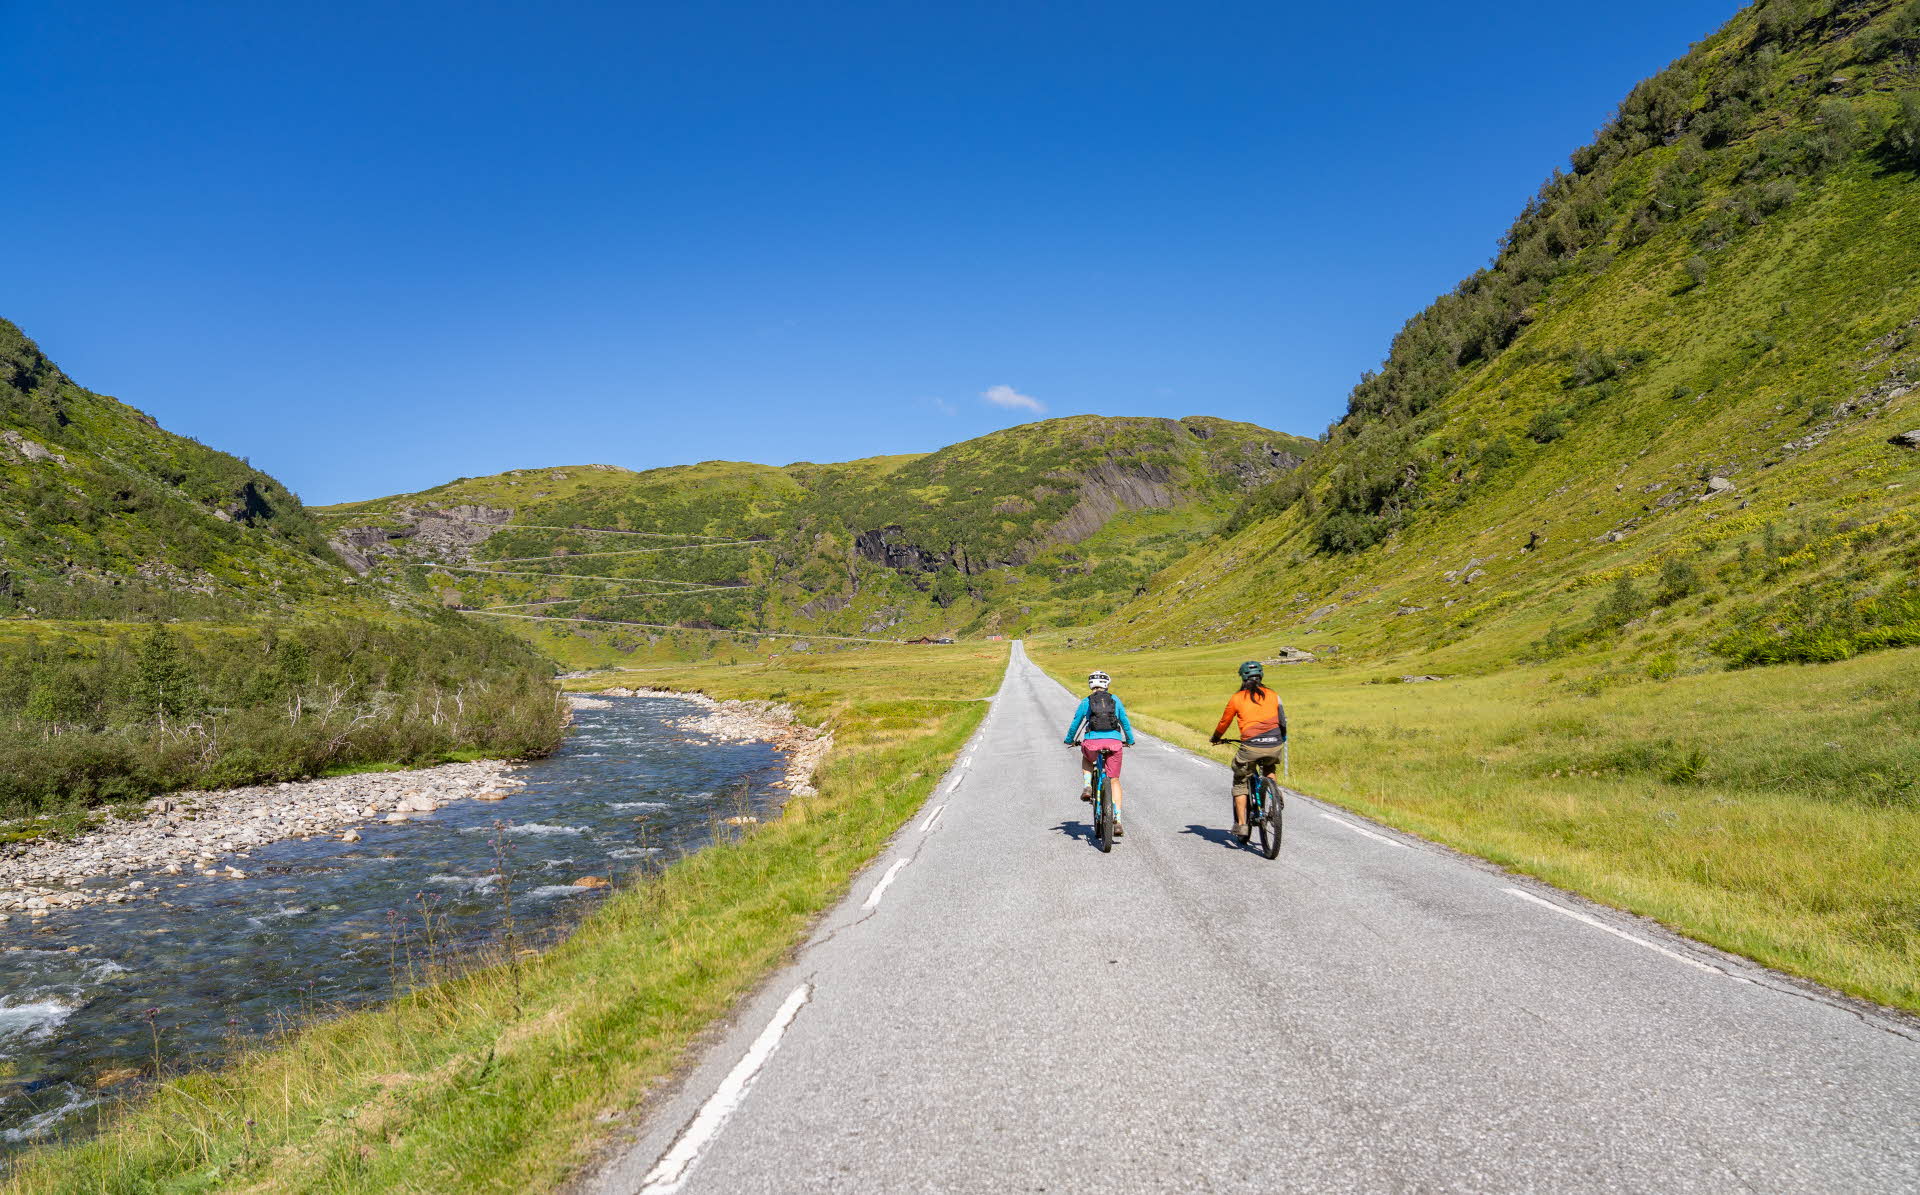 Deux cyclistes sur une route au bord d’une rivière et des montagnes escarpées et verdoyantes de chaque côté.